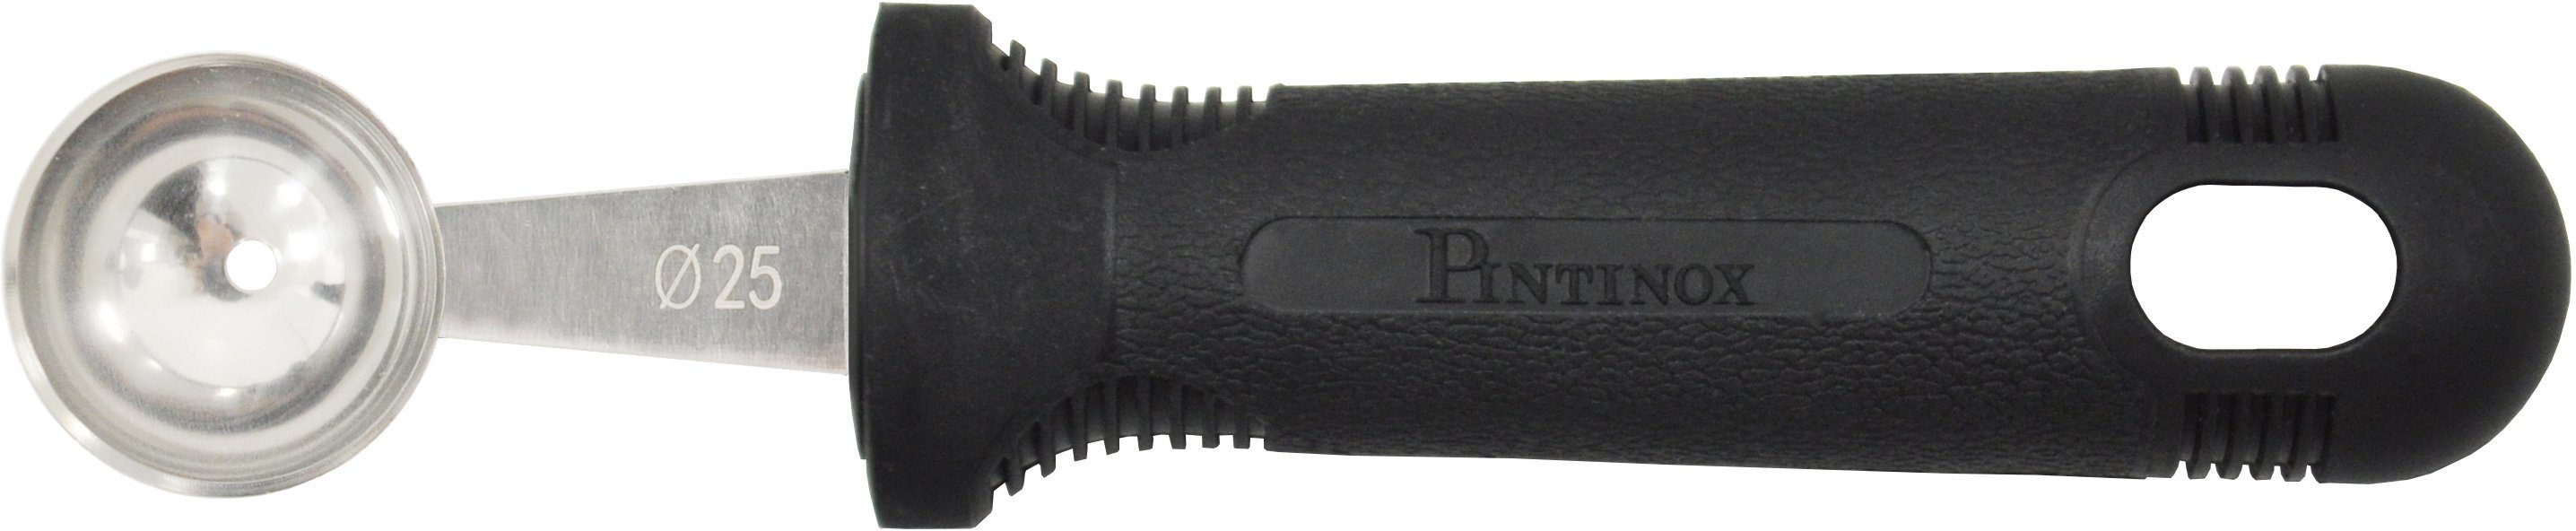 PINTINOX Kugelausstecher Professional, 22mm, Melonenausstecher, 30mm und 25mm